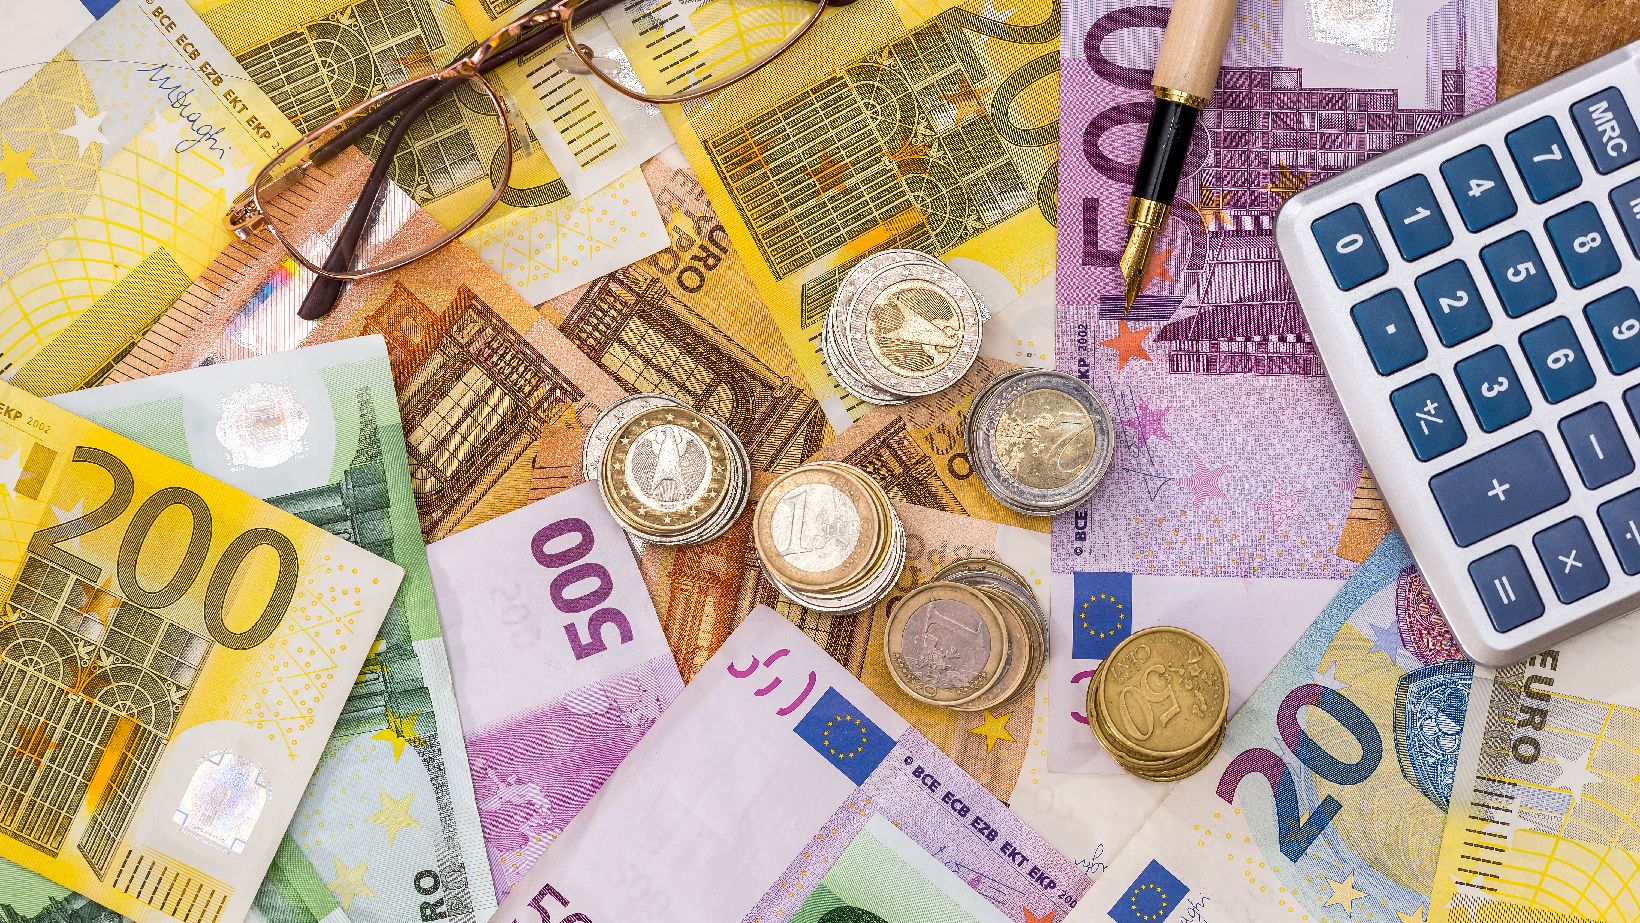 Euro Scheine und Münzen, sowie ein Stift, ein Taschenrechner und eine Brille.